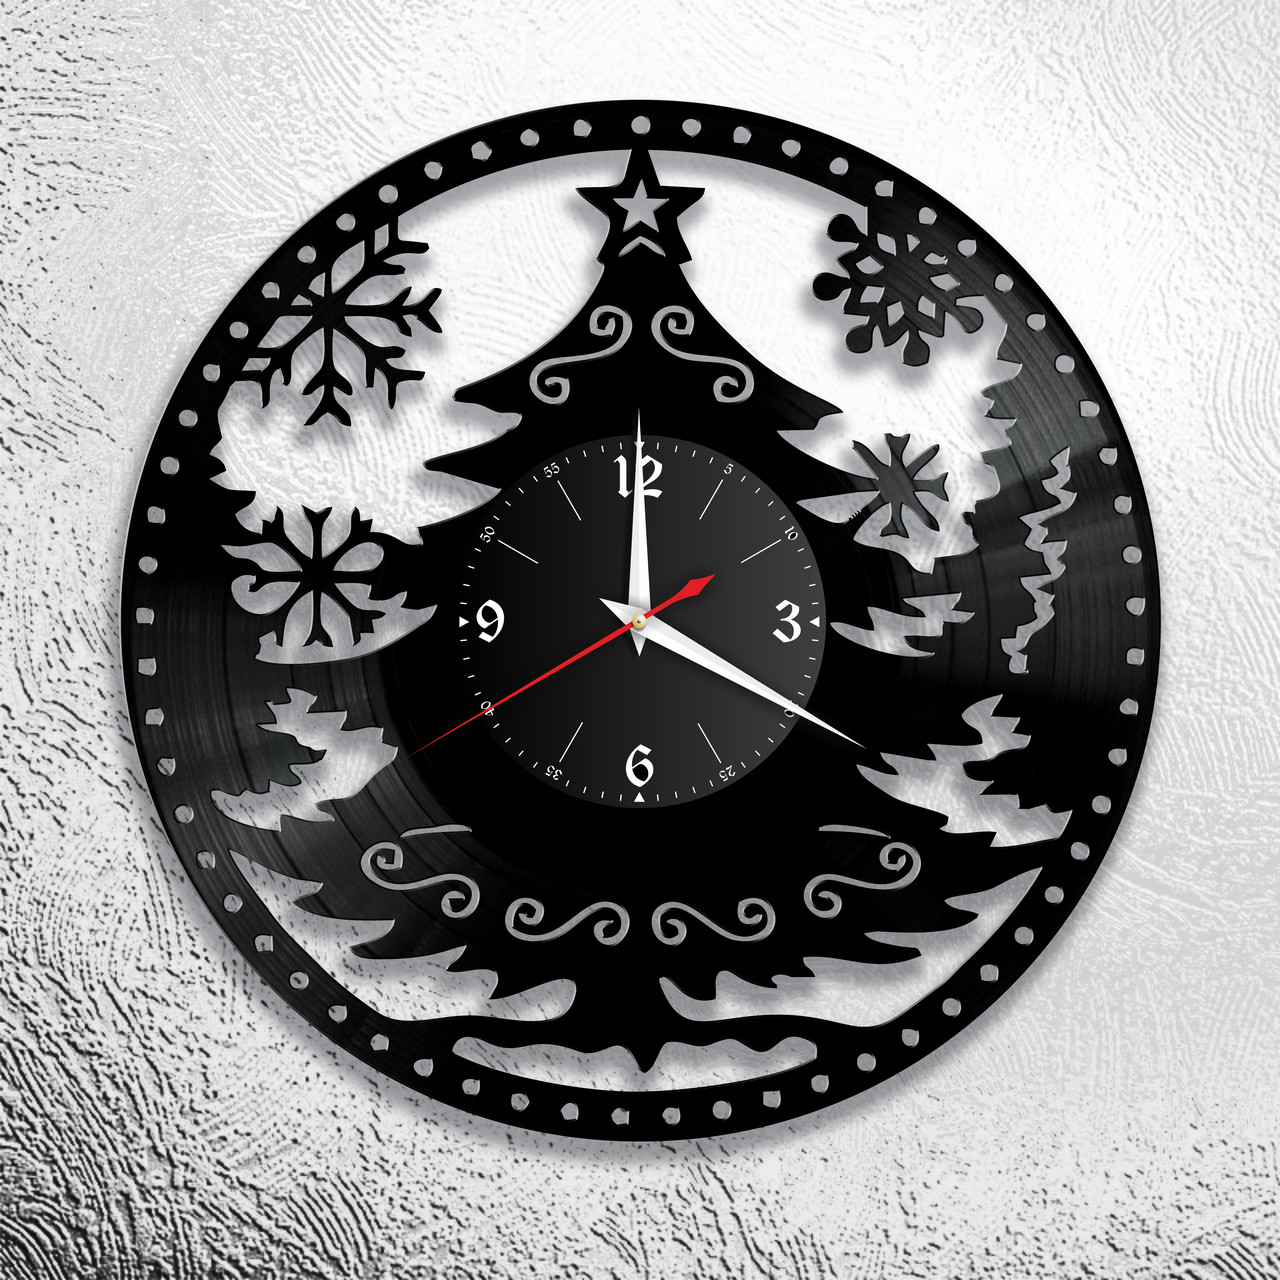 Оригинальные часы из виниловых пластинок "Новый год" версия 3, фото 1